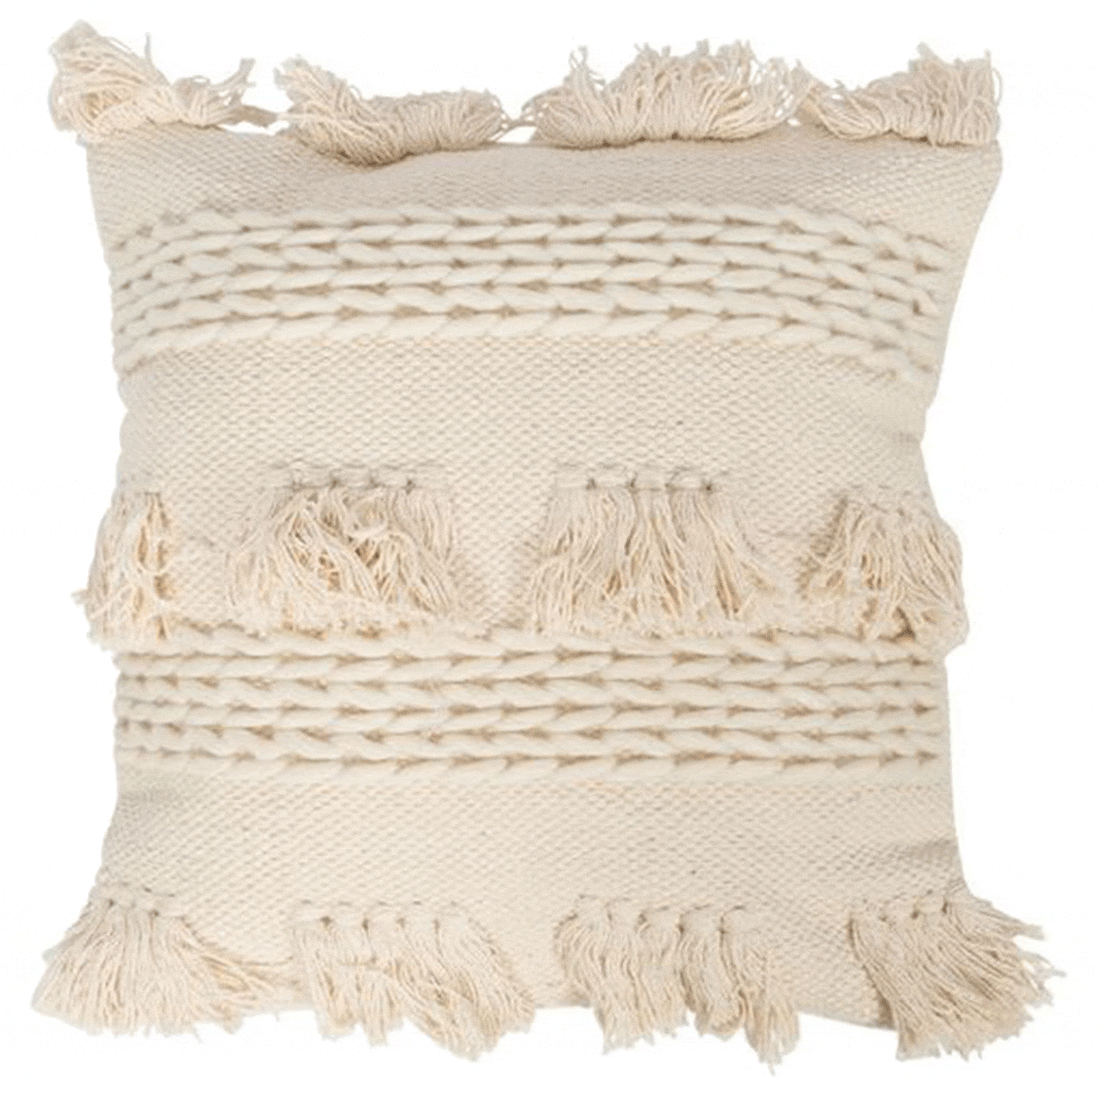 Hayman Hand Woven Cotton Cushion.